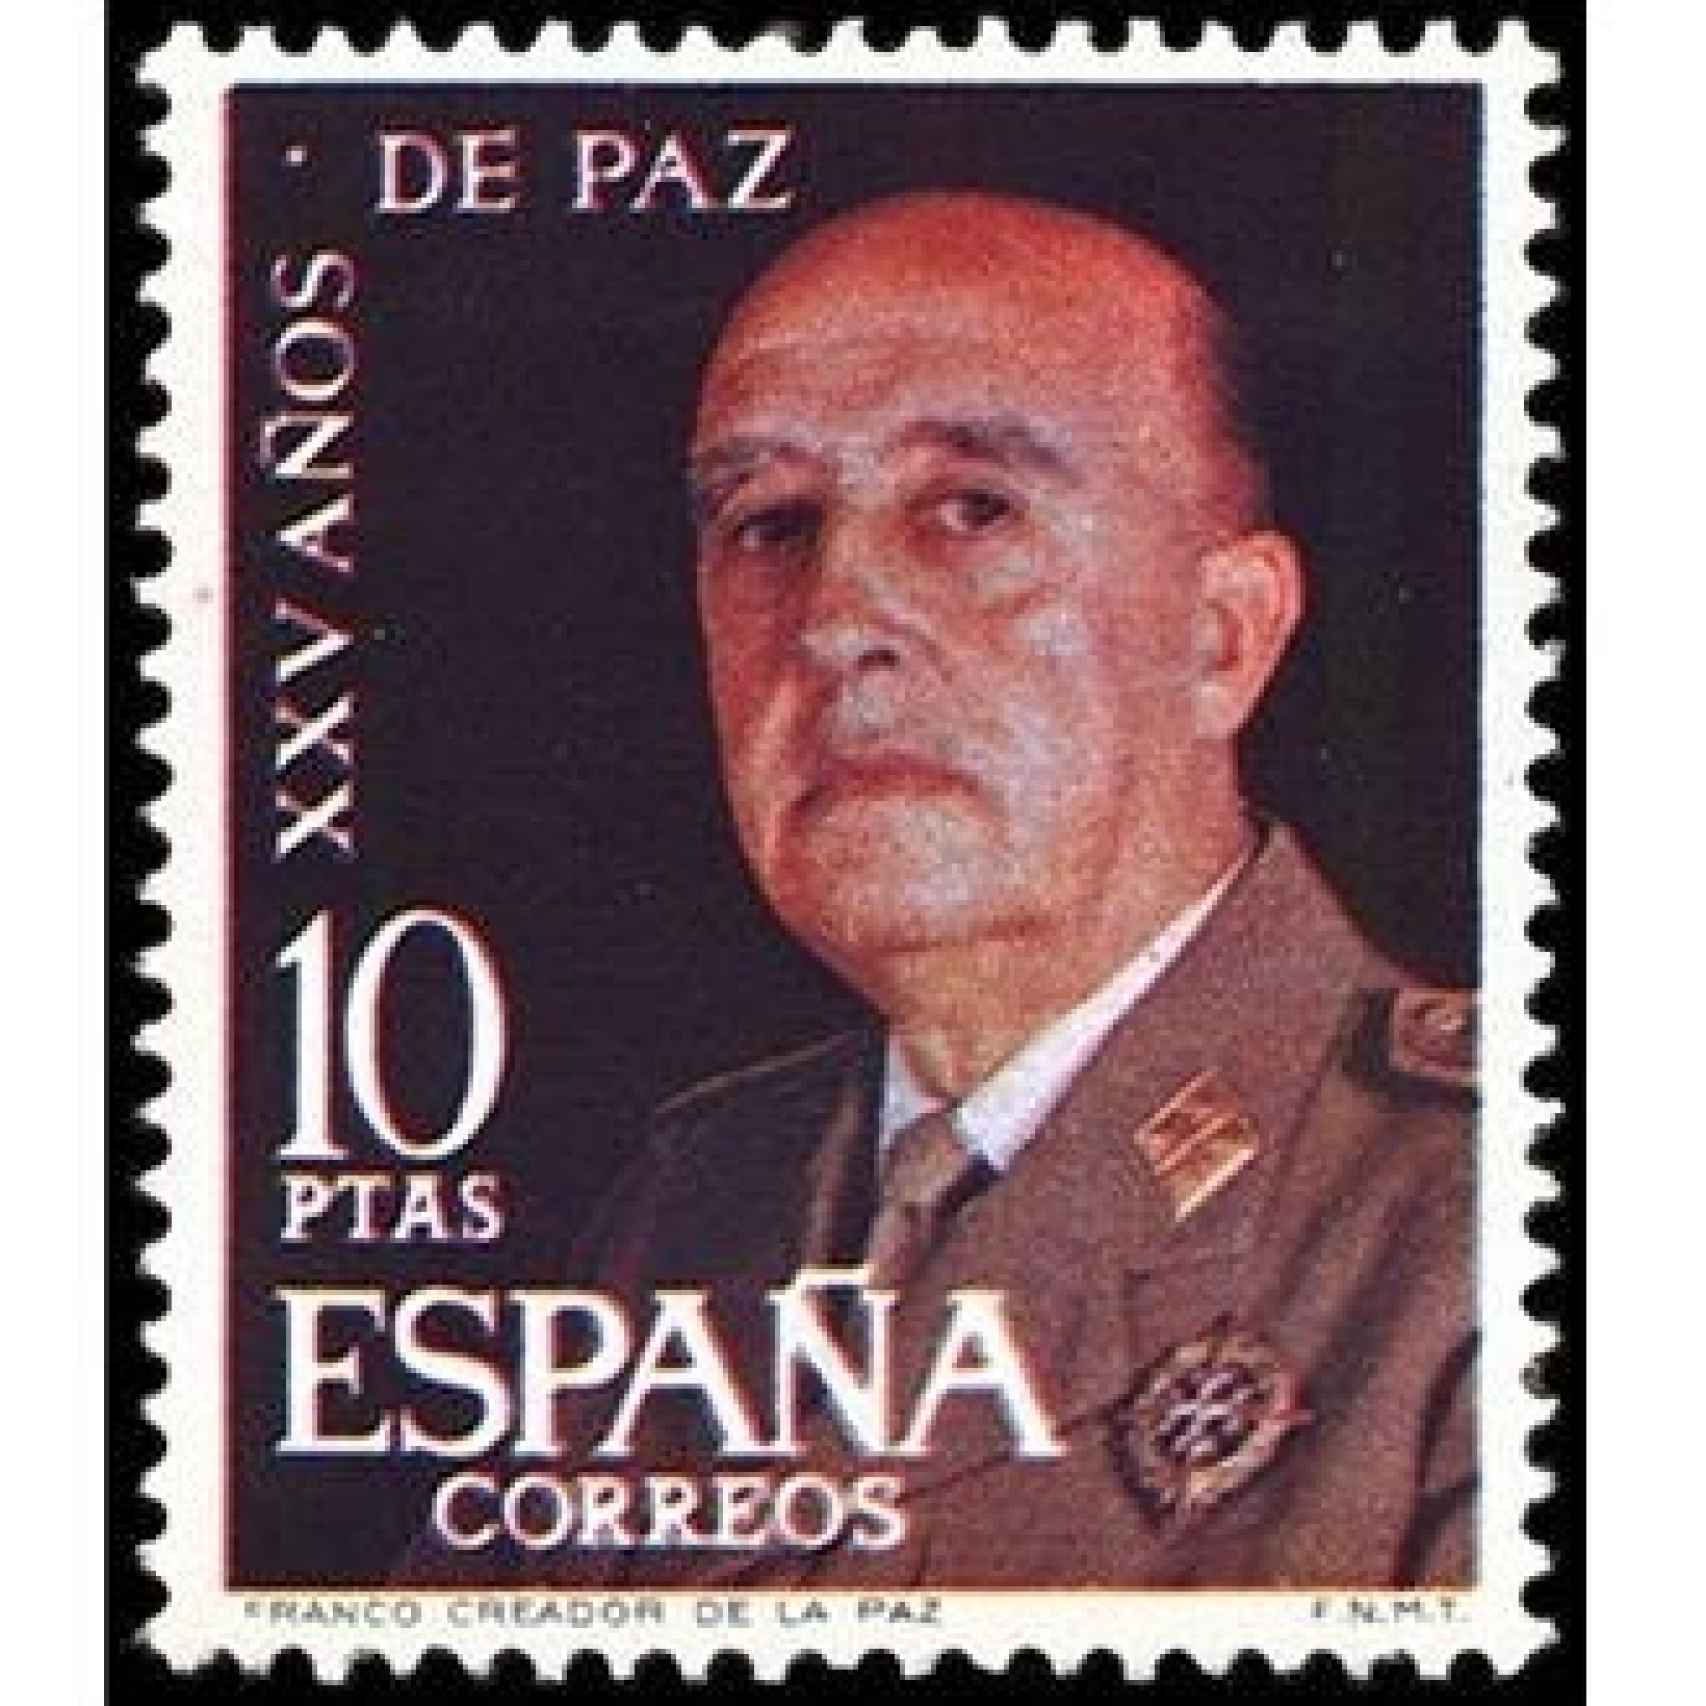 Sello conmemorativo de los "25 años de paz", dictados por Franco.